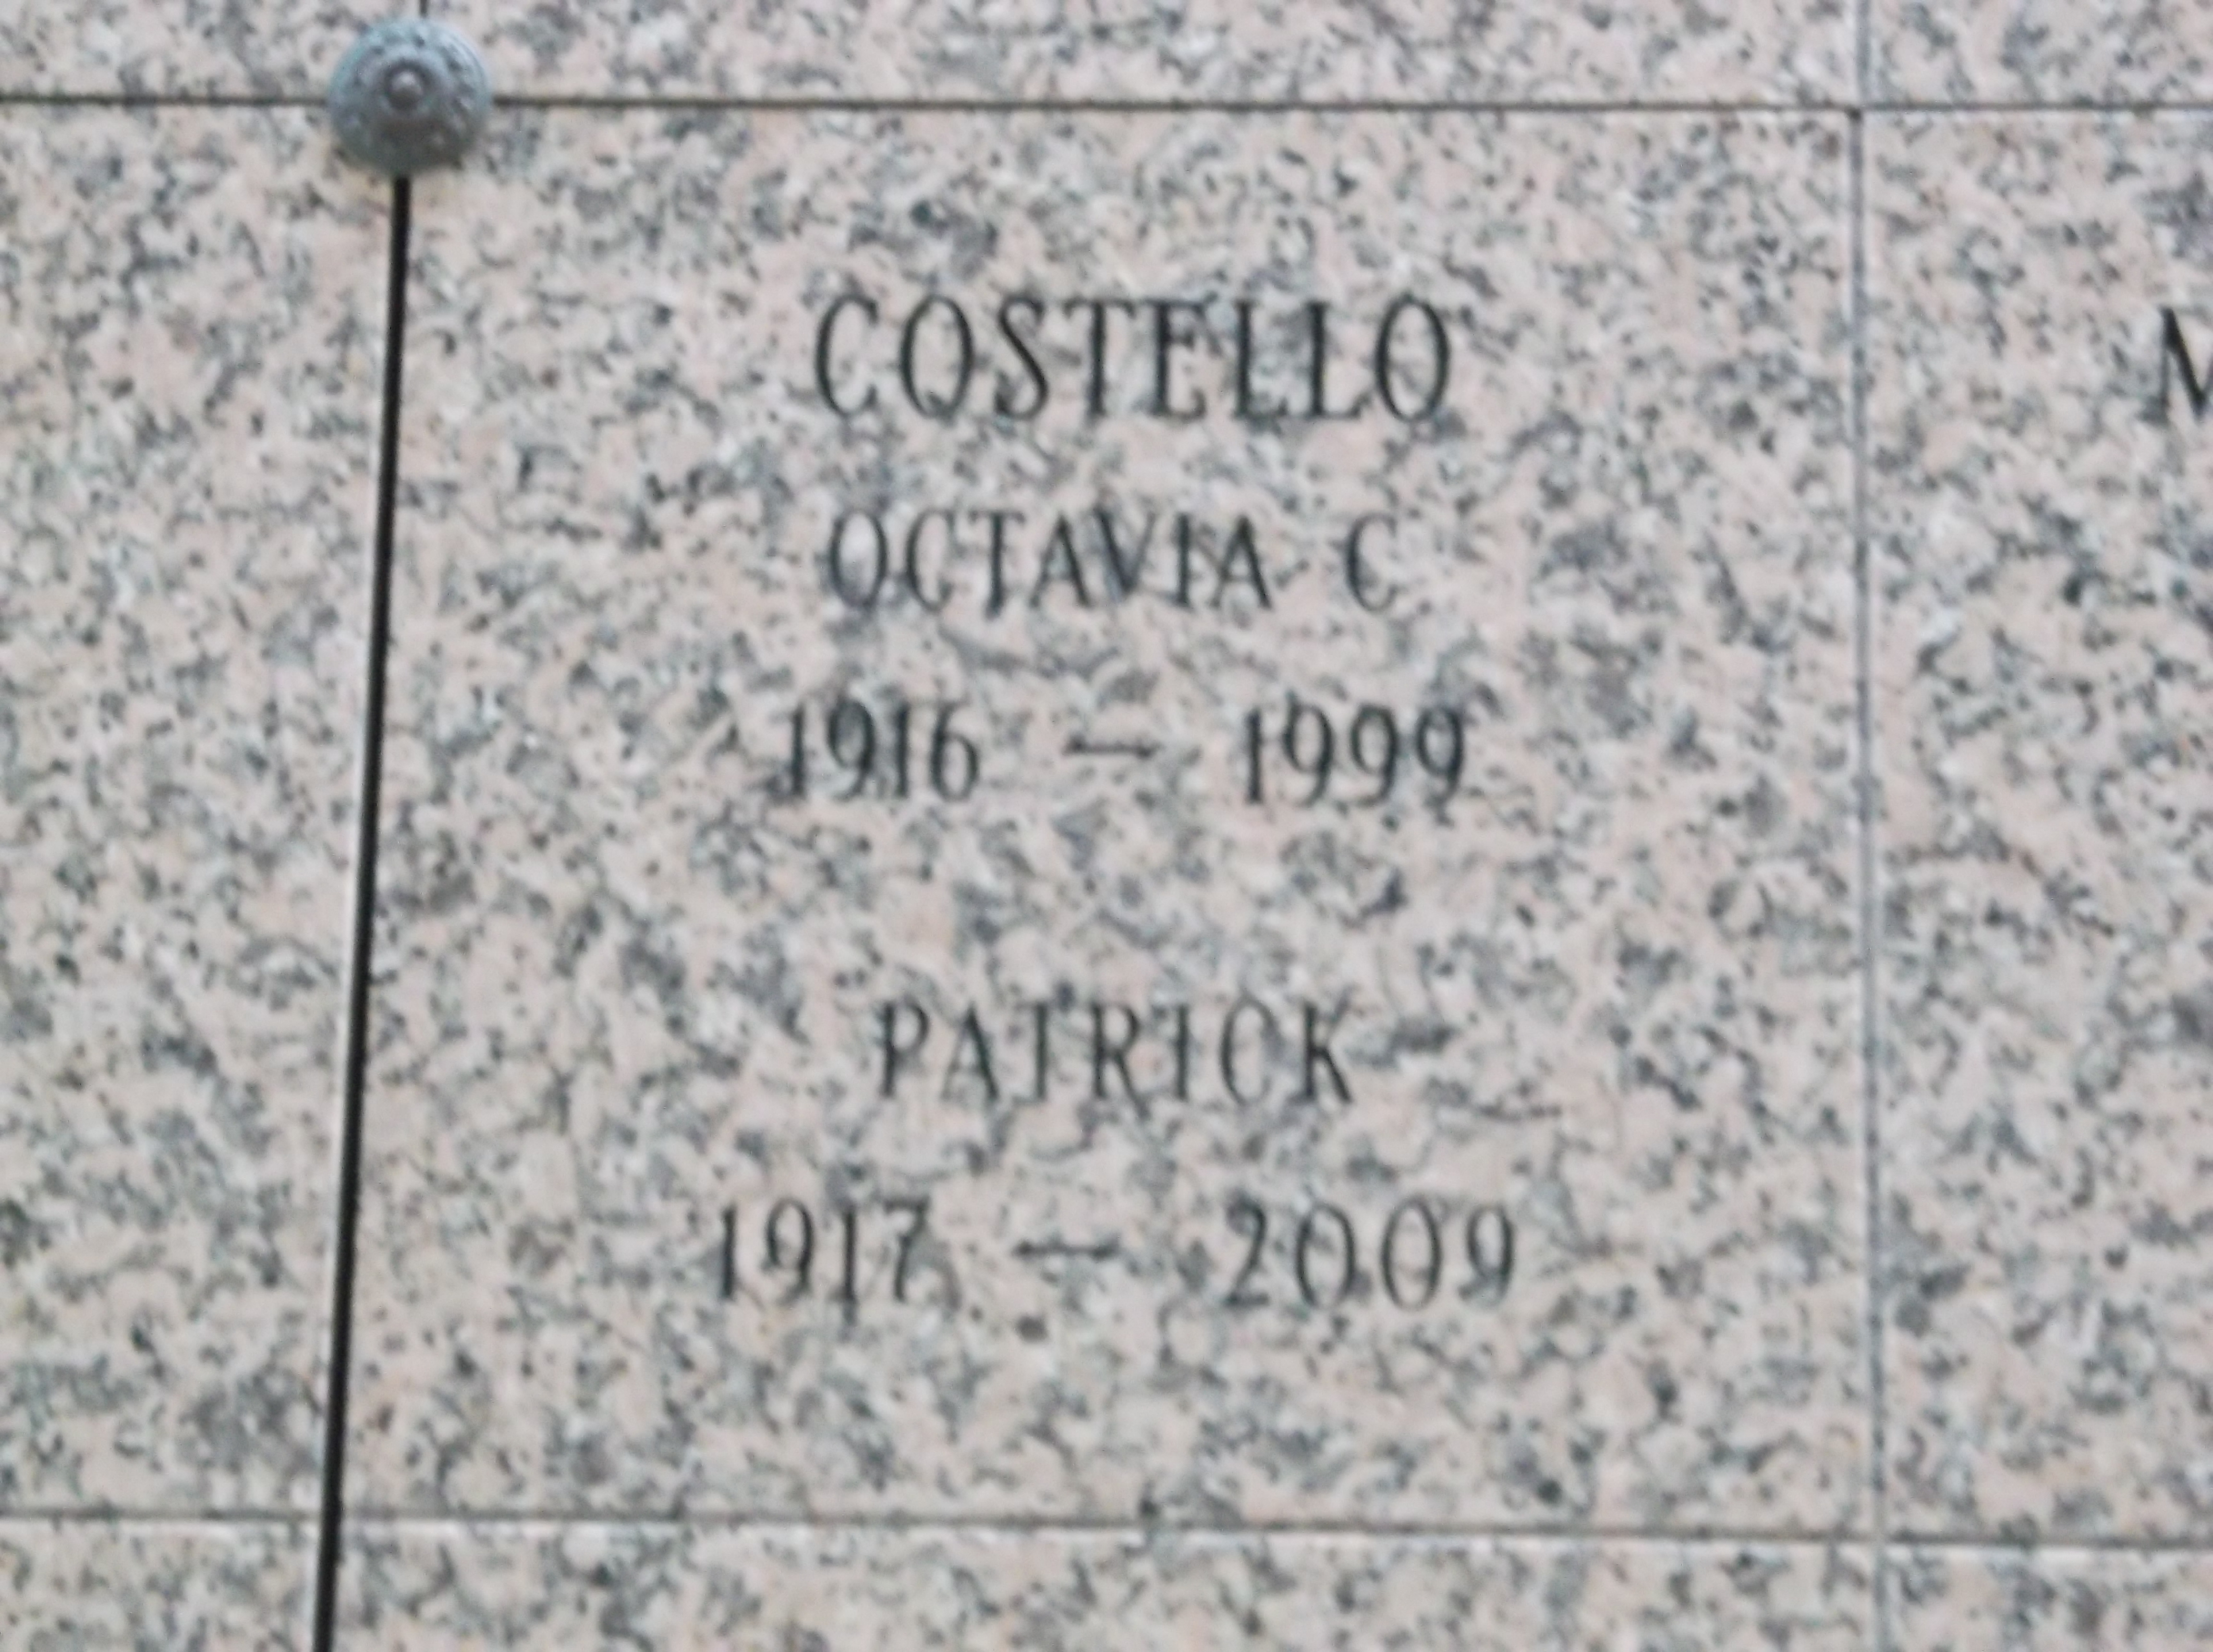 Patrick Costello